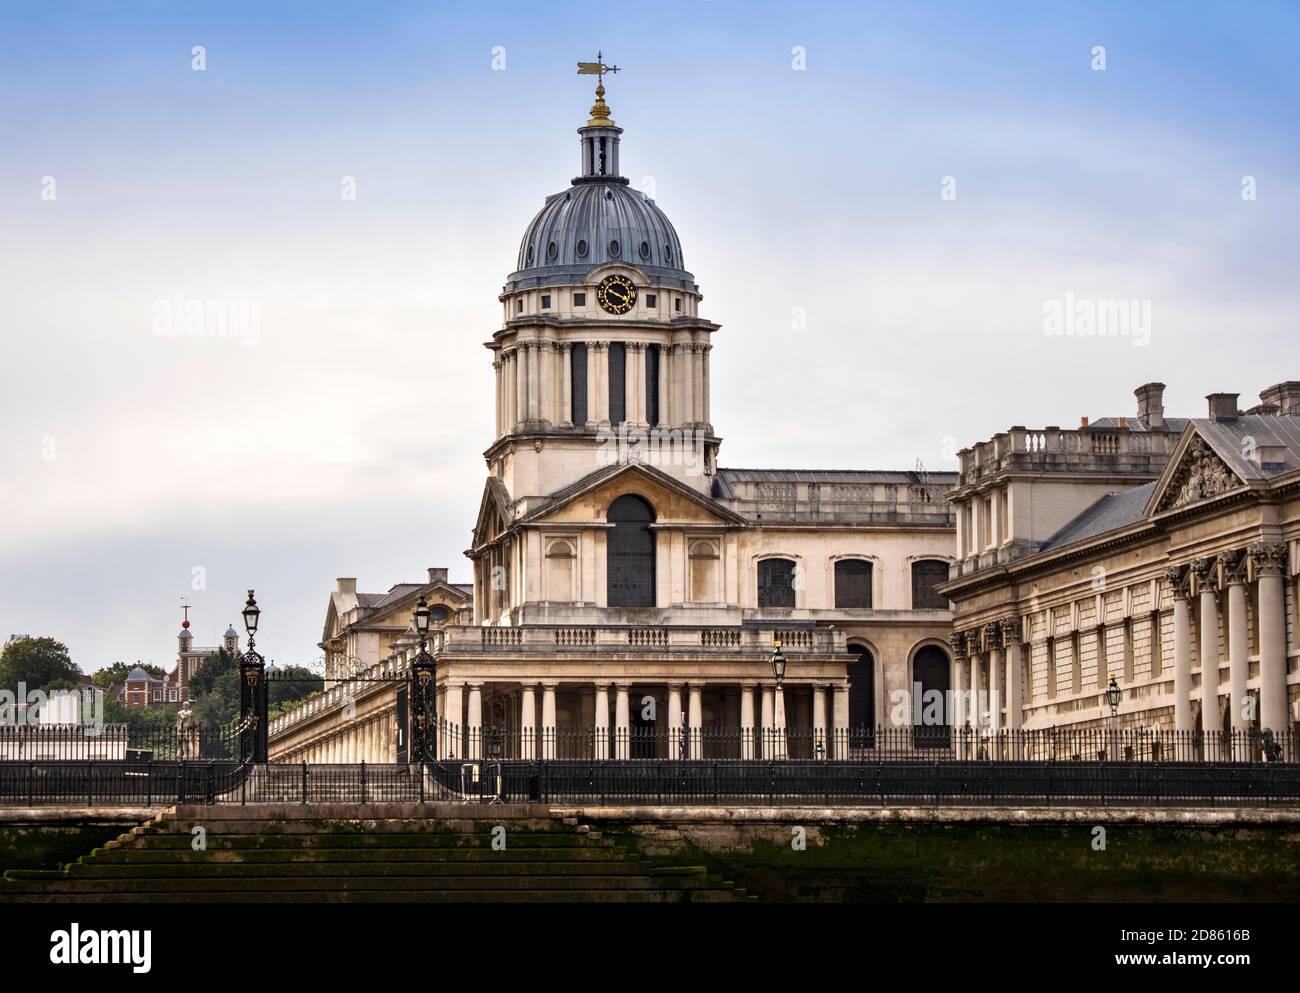 Regno Unito, Londra, Greenwich, Royal Naval College Buildings, progettato da Sir Christopher Wren come Royal Hospital per i marinai a Greenwich Foto Stock